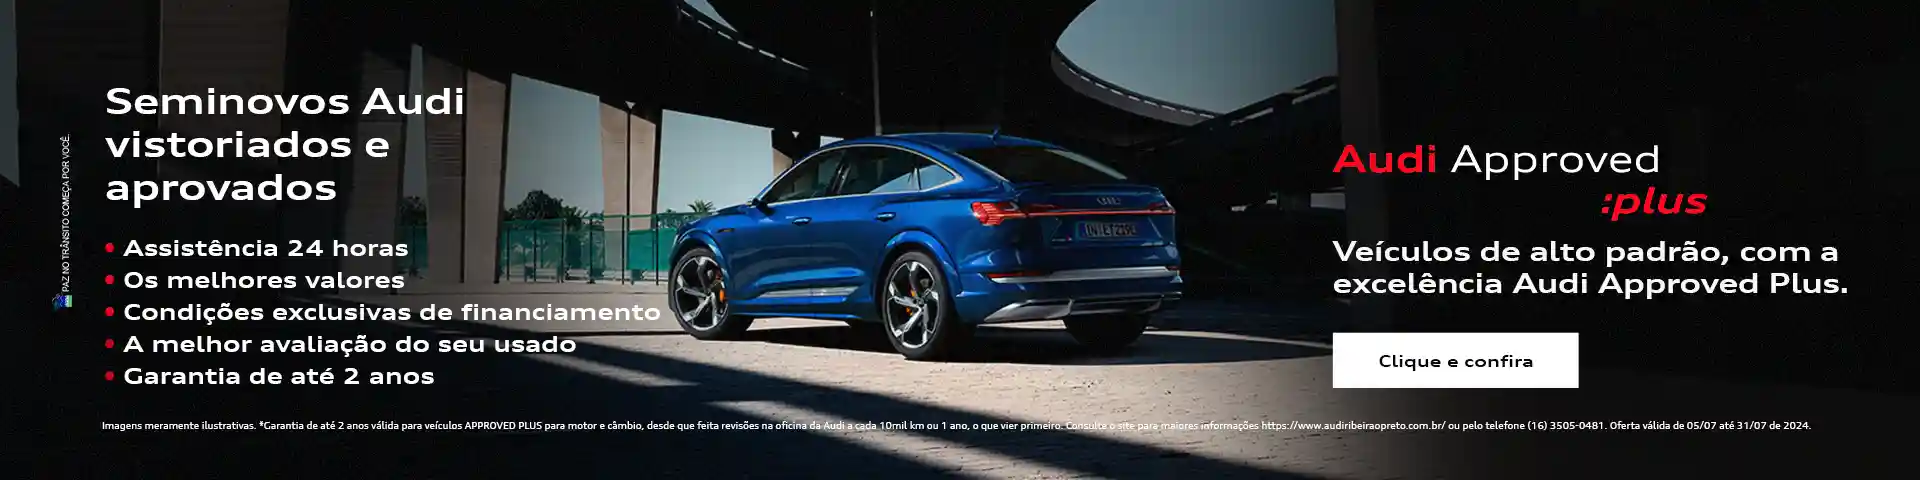 Audi Approved pluss - Veículos alto padrão 